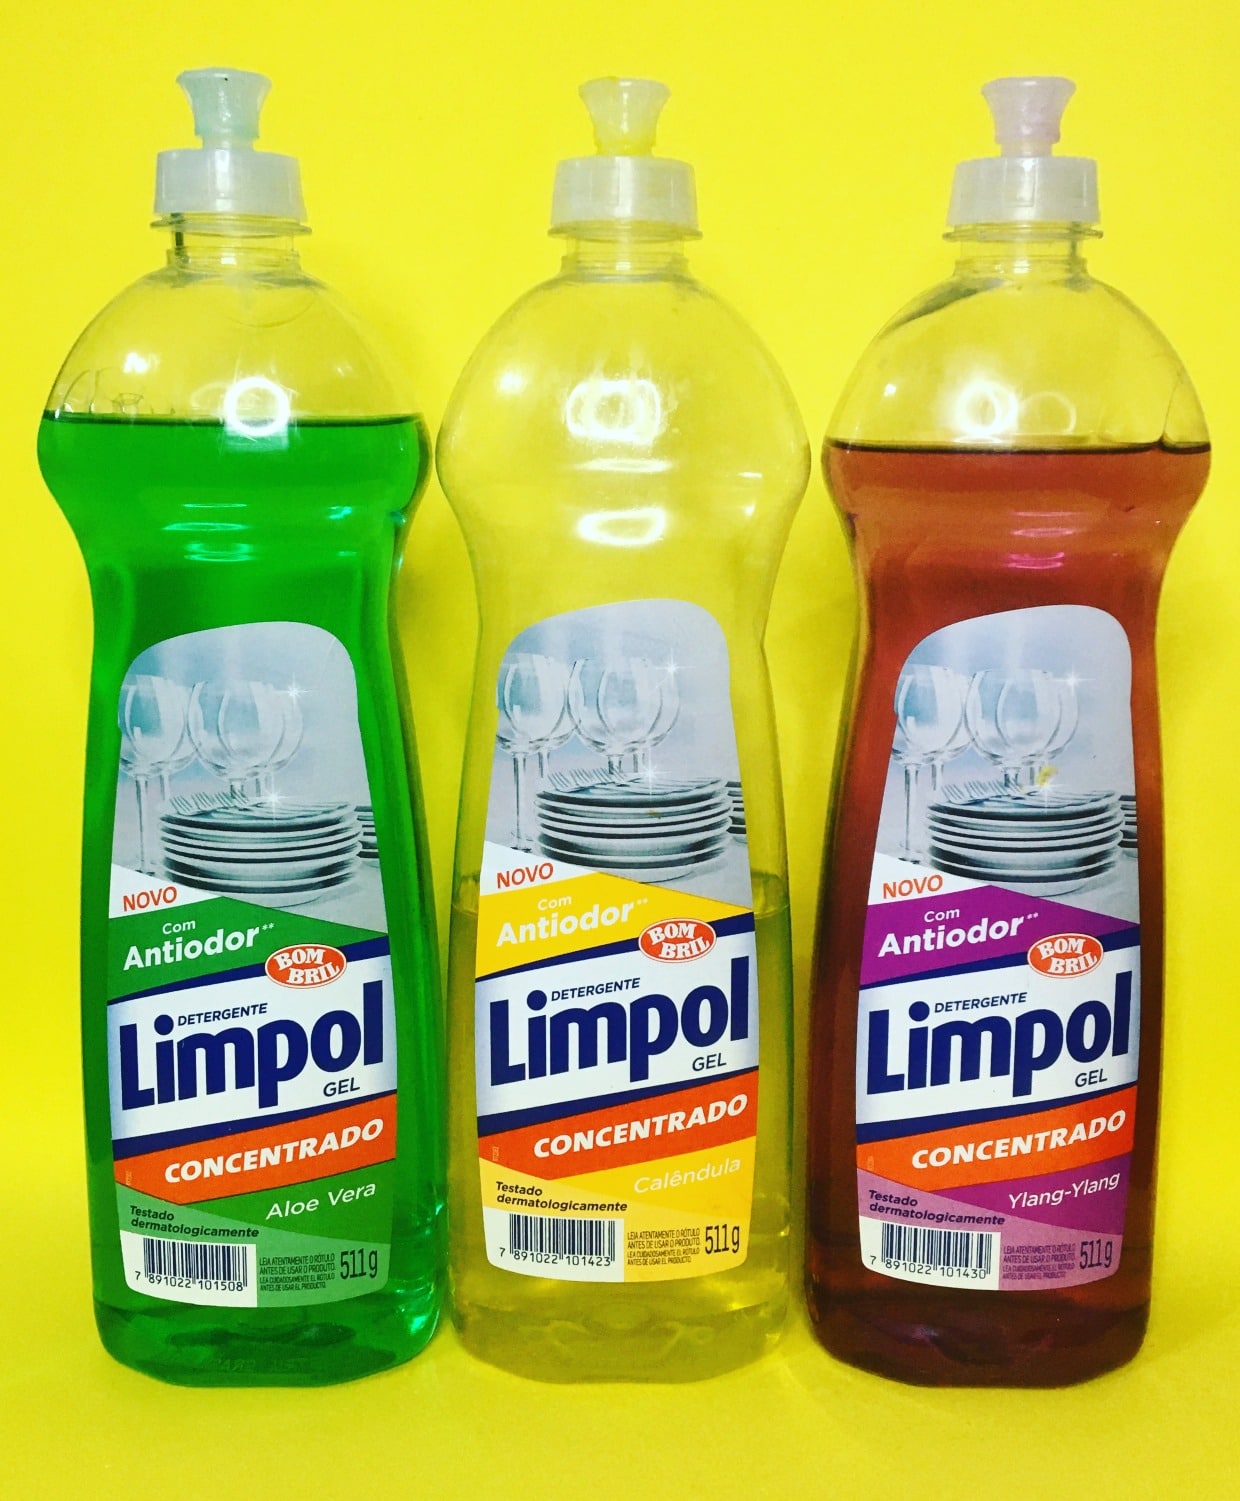 Detergente Limpol gel concentrado com antiodor